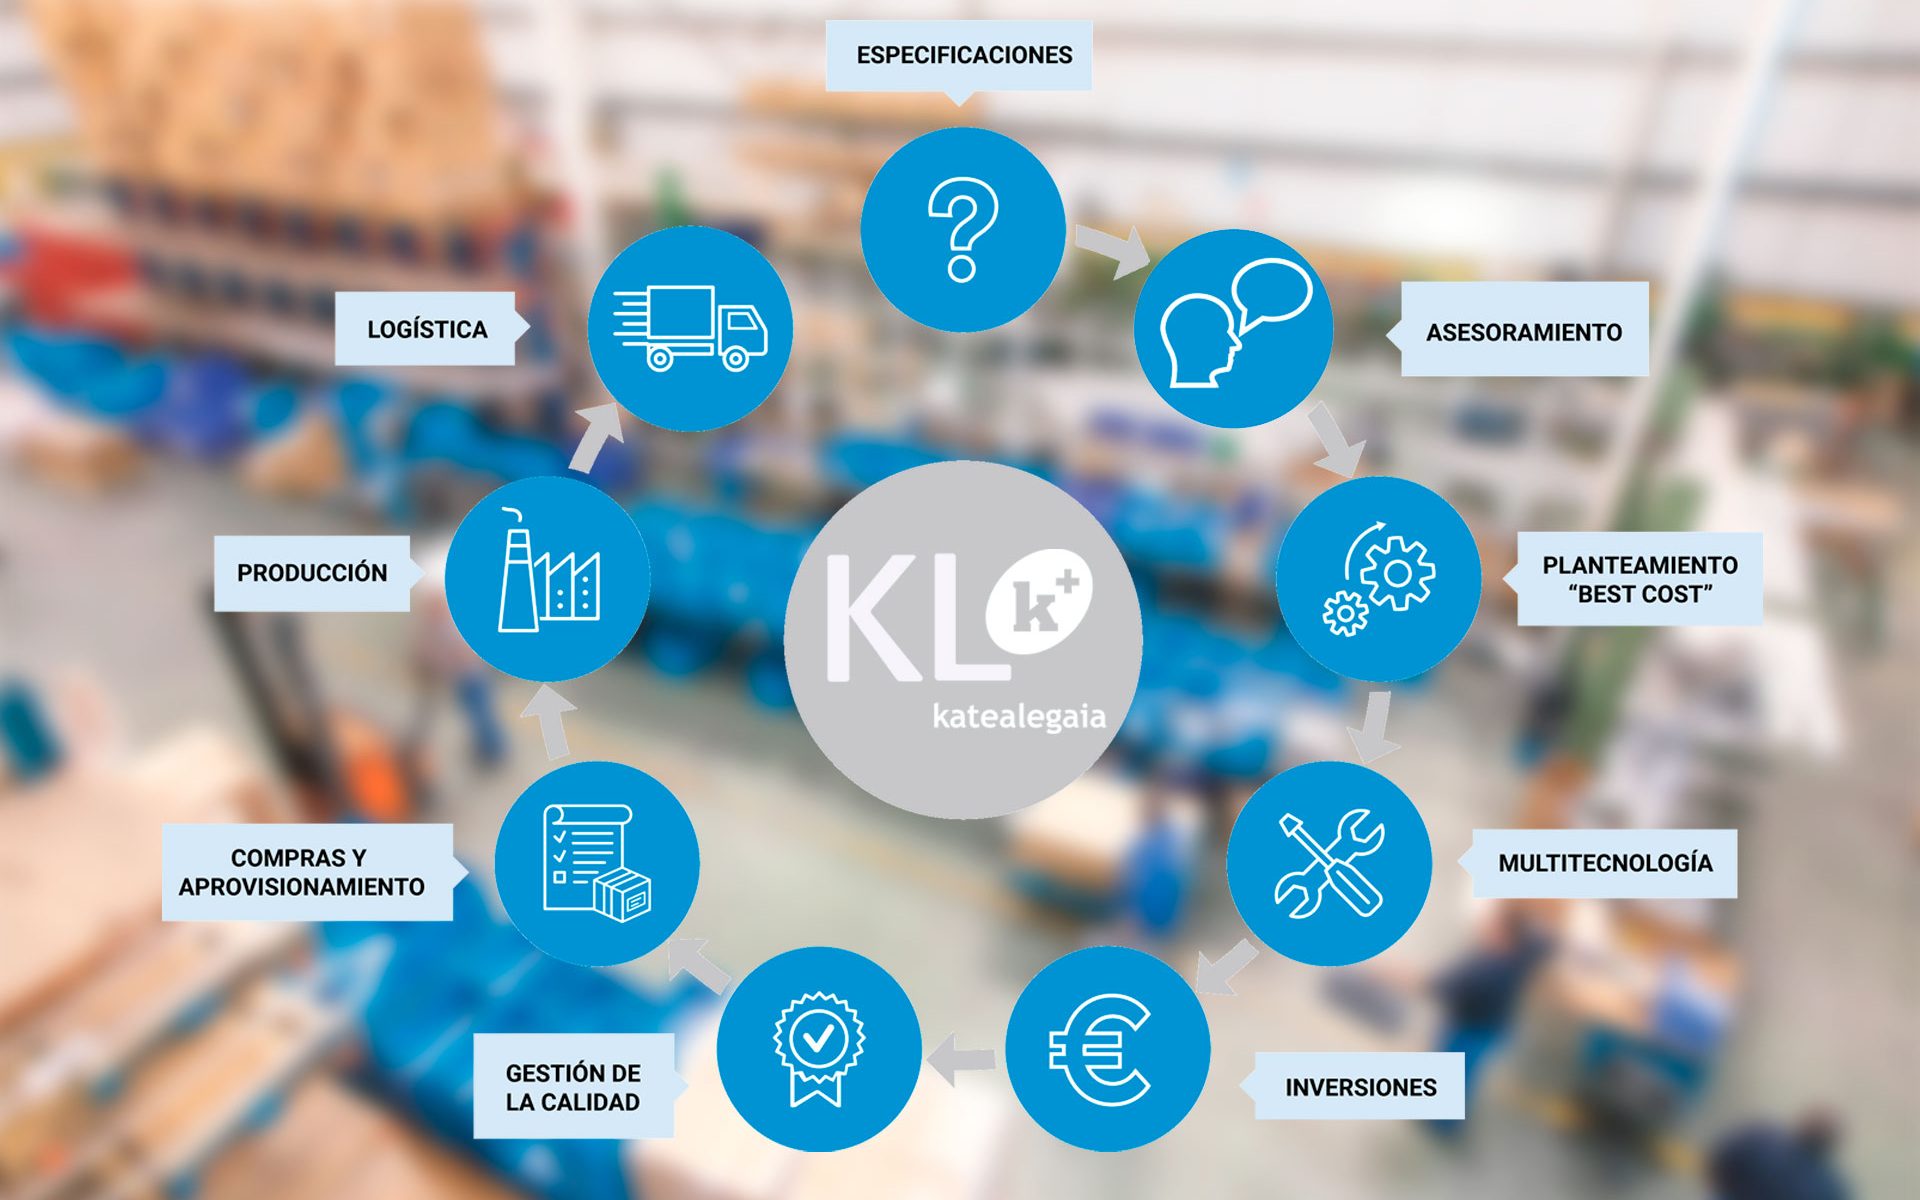 KL katealegaia mantiene el paso hacia una propuesta de valor integral